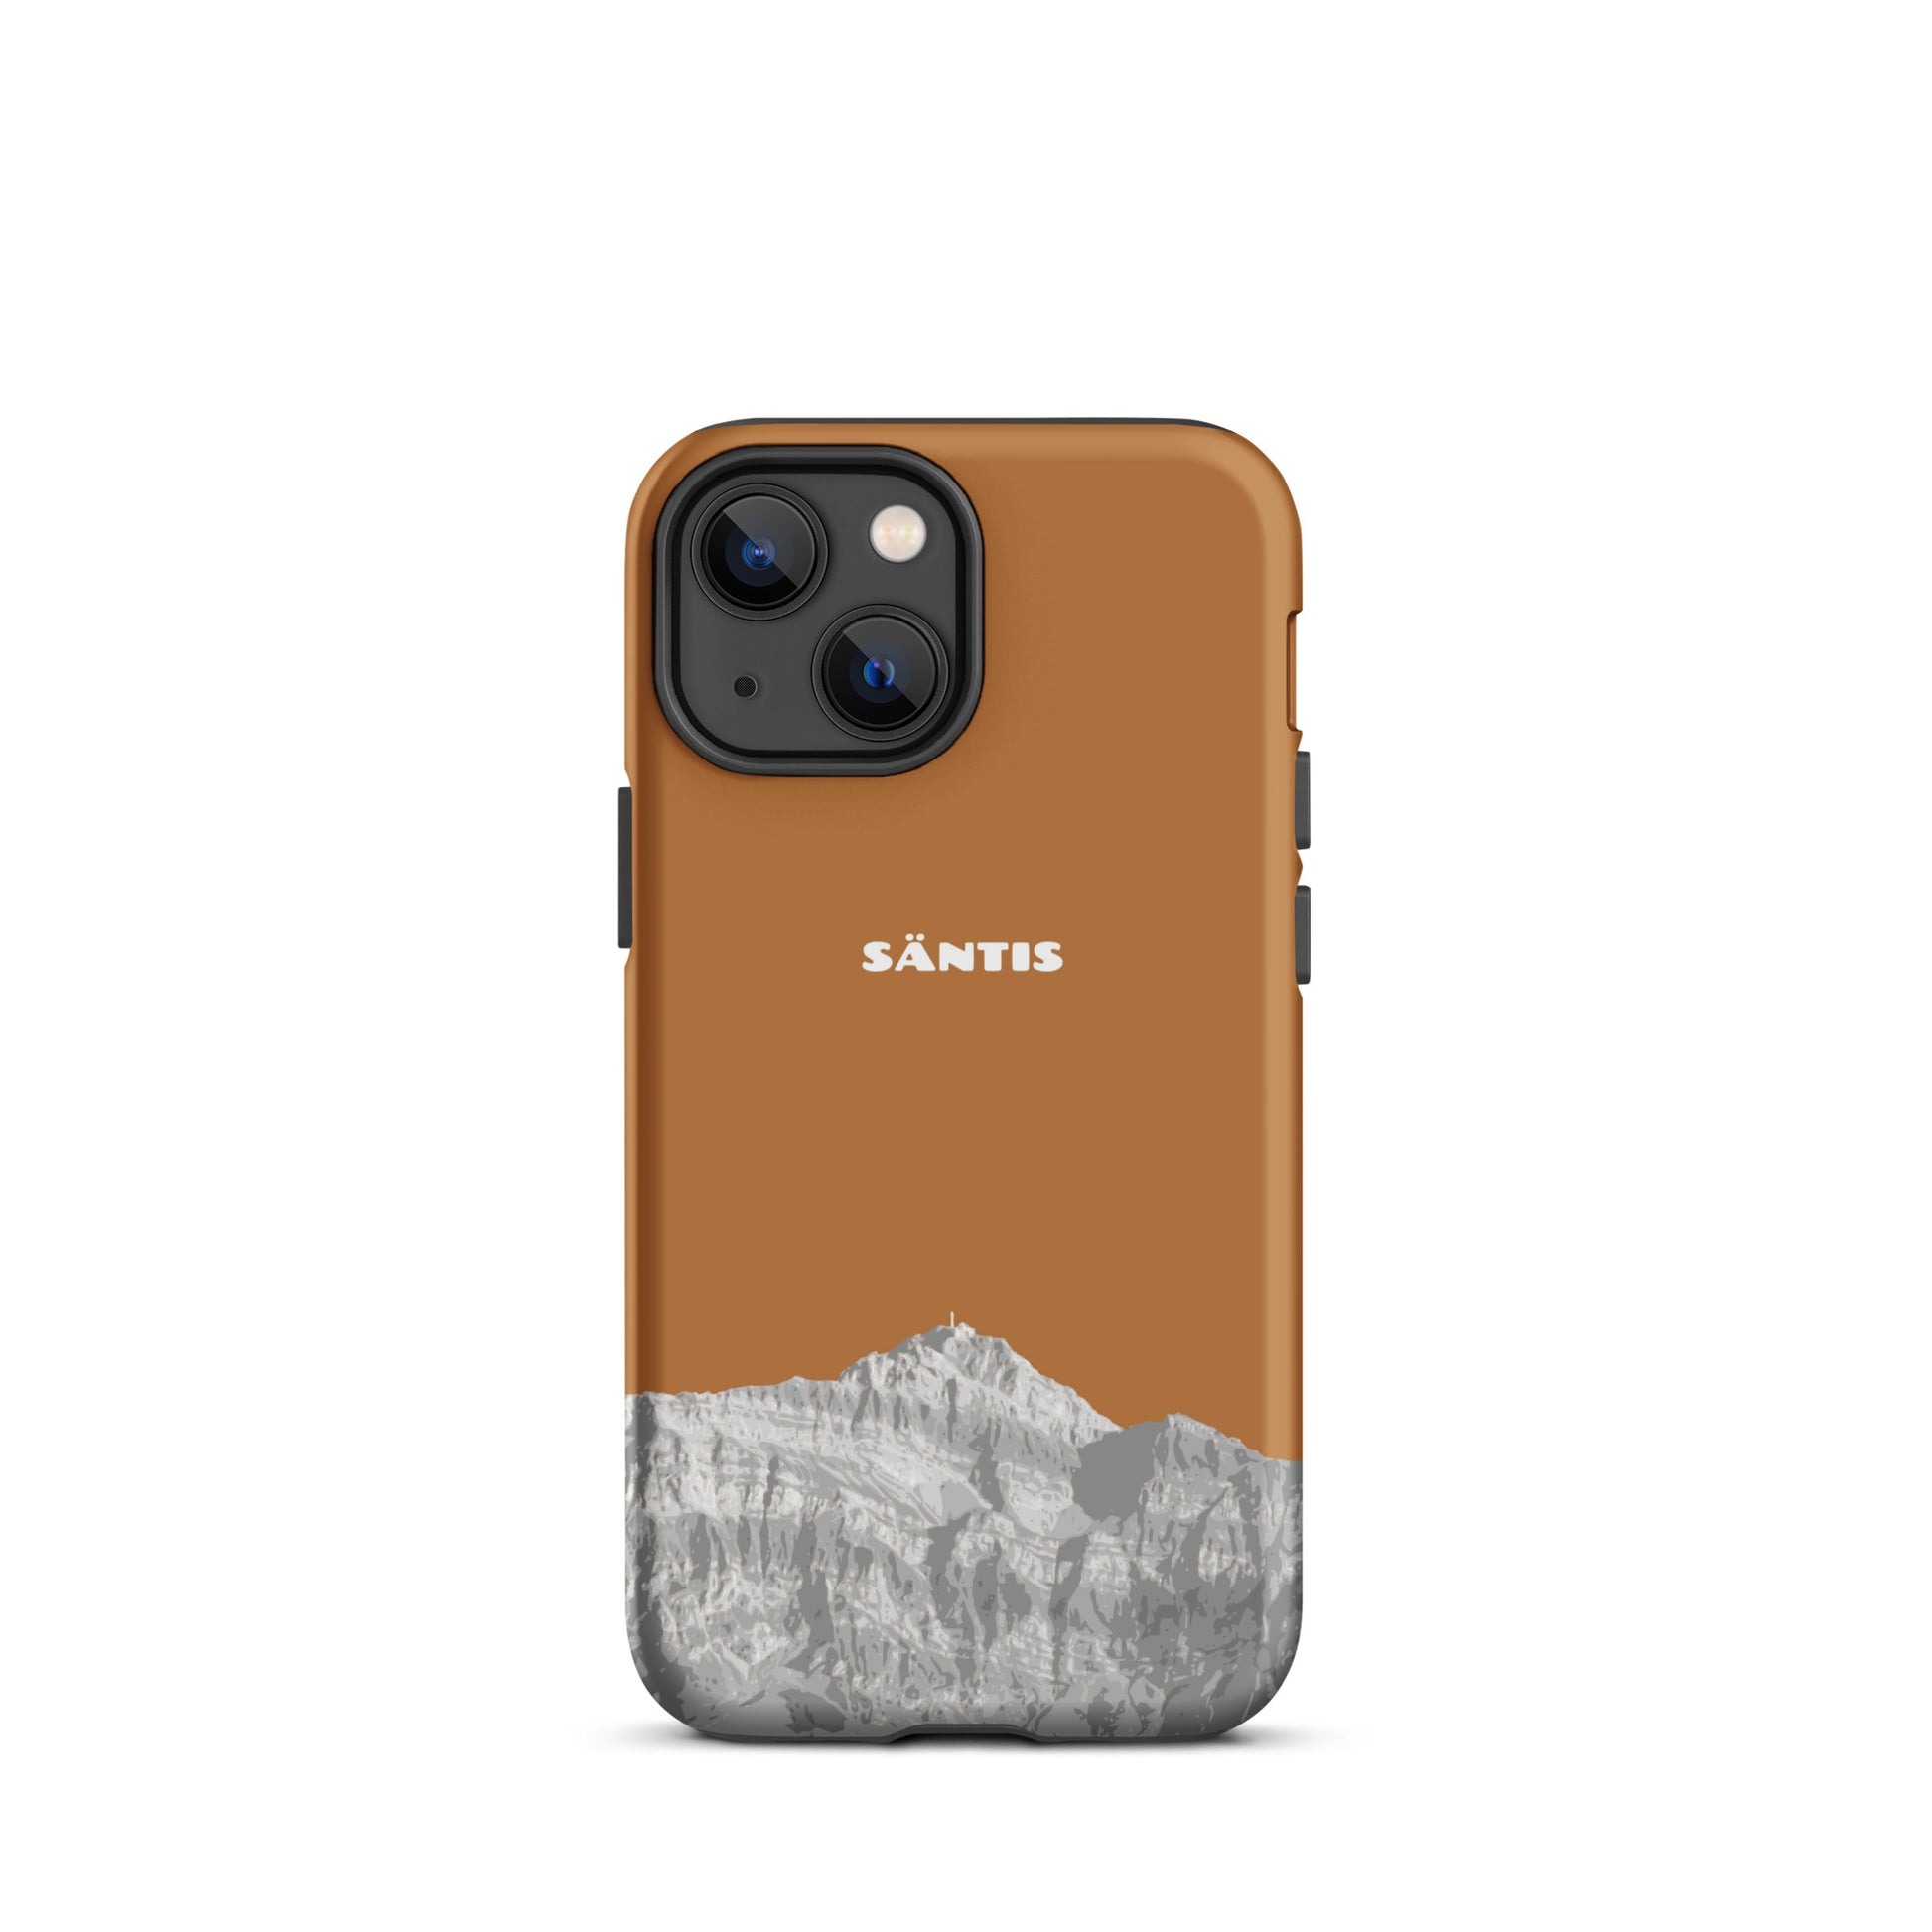 Hülle für das iPhone 13 Mini von Apple in der Farbe Kupfer, dass den Säntis im Alpstein zeigt.